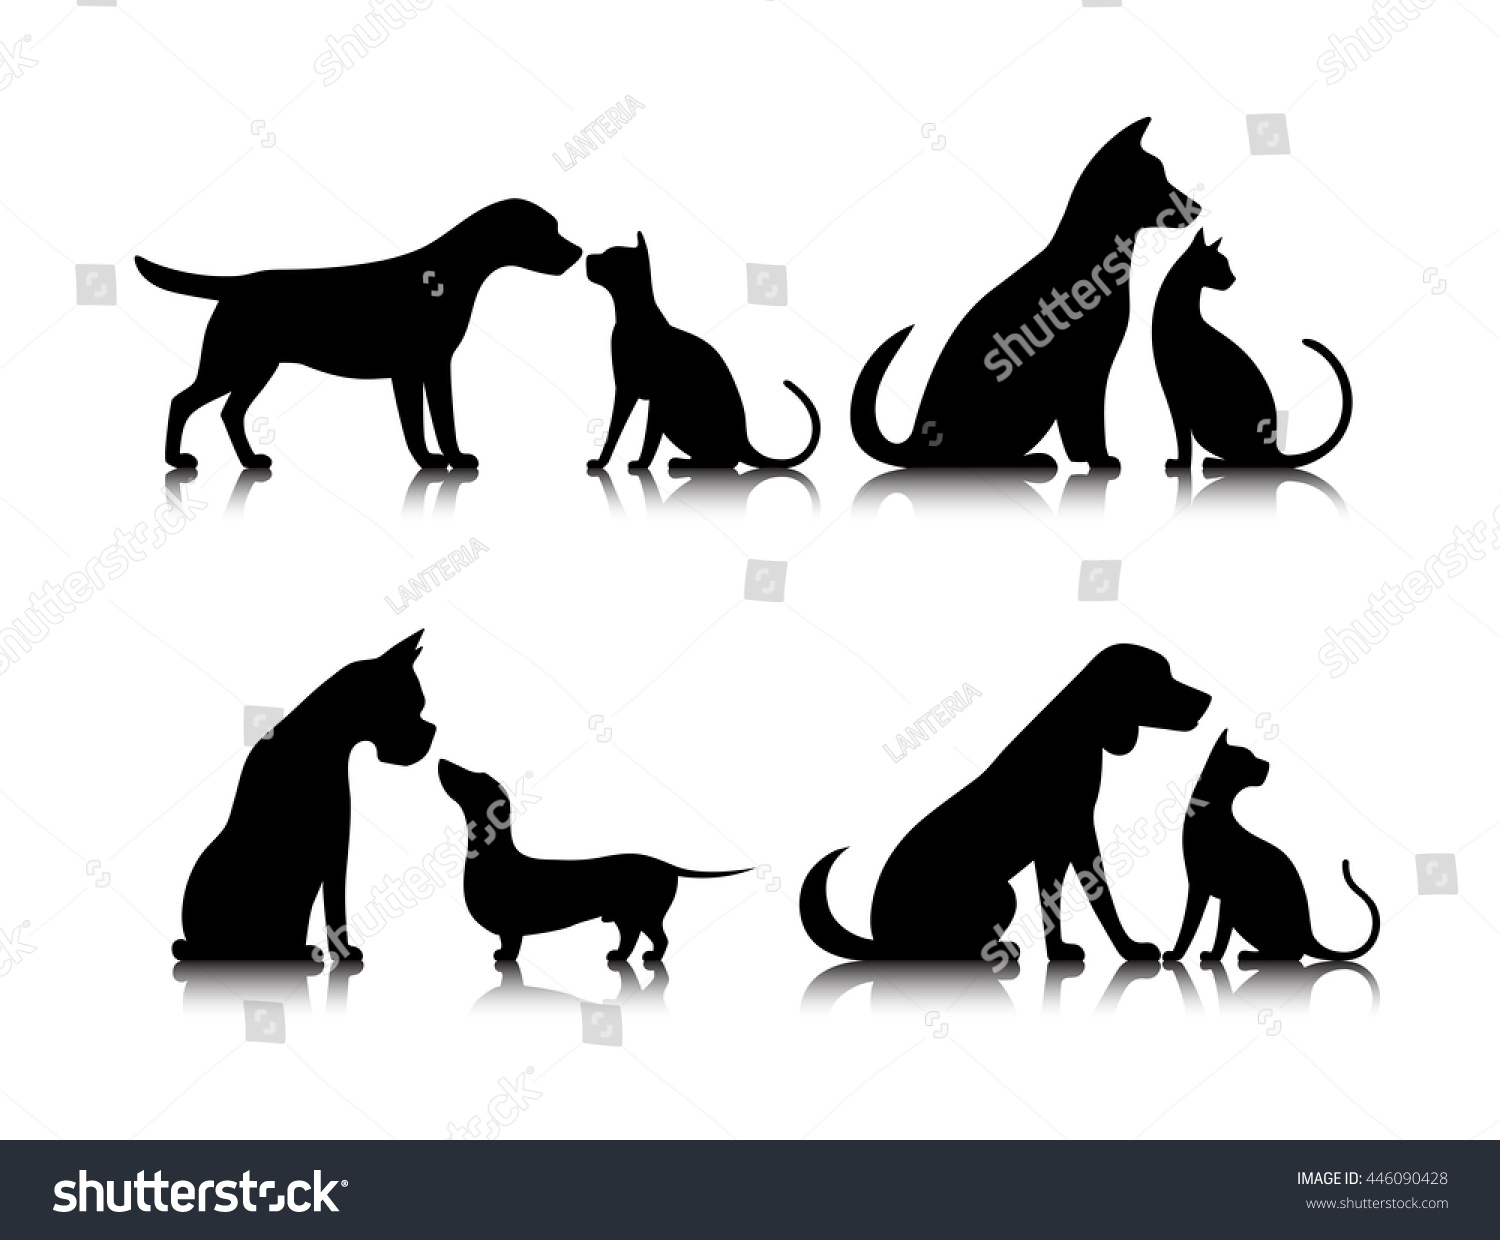 犬と猫の動物のシルエット のイラスト素材